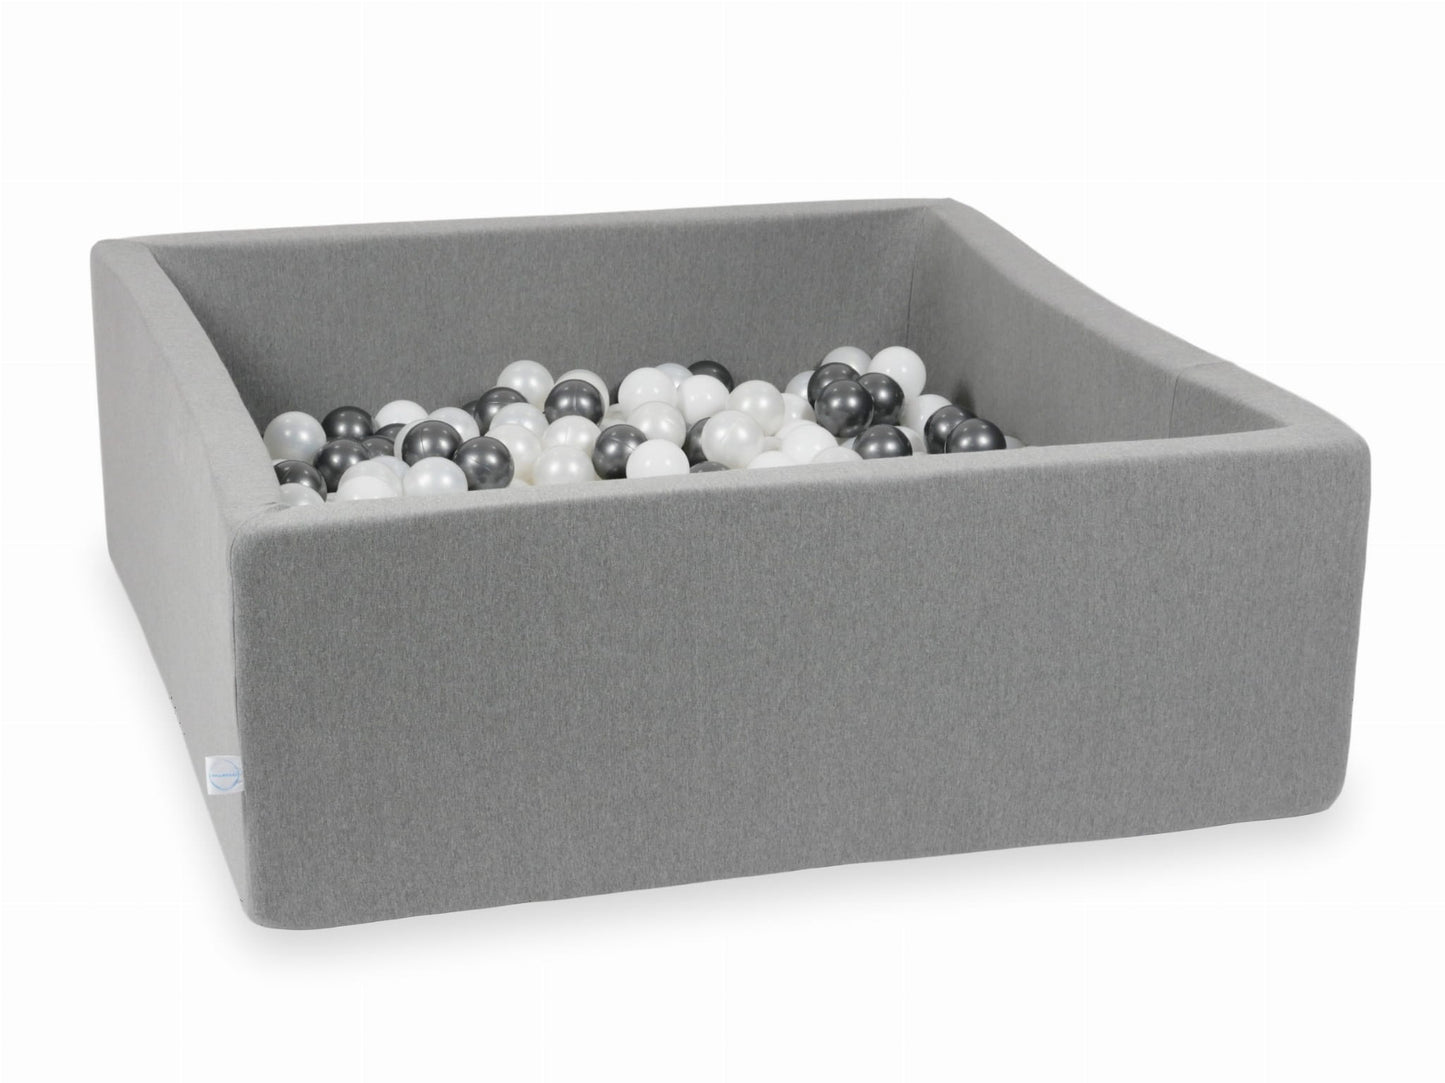 Piscine à Balles 110x110x40 grise avec balles 600 pcs (blanc, perle, graphite métallique)